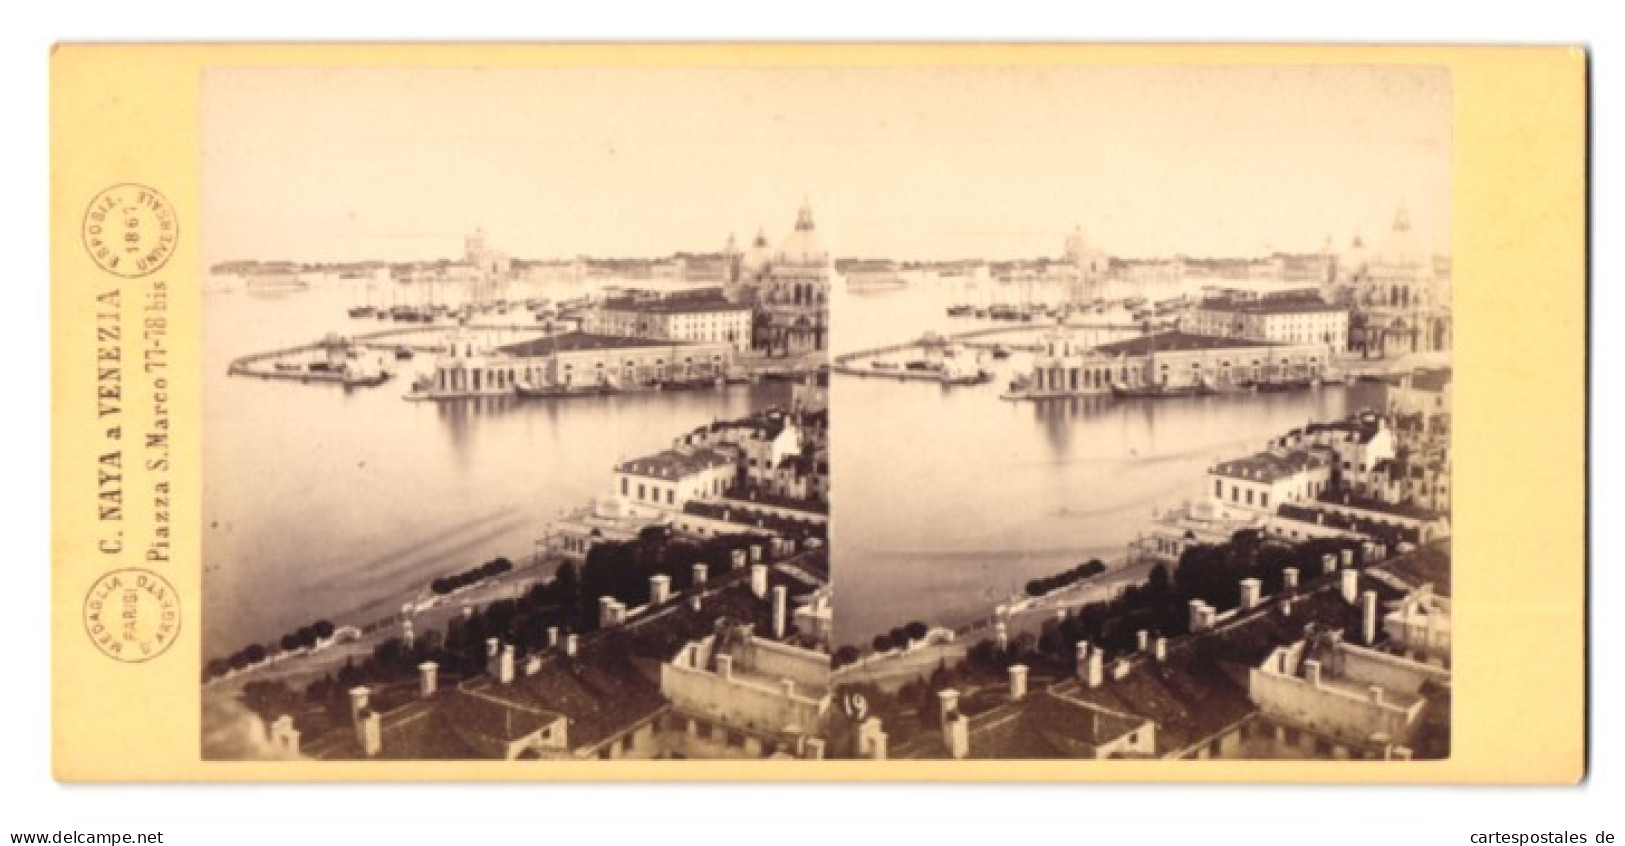 Stereo-Foto C. Naya, Venezia, Ansicht Venedig, Panorama Dogana Di Mare, 1869  - Stereoscopic